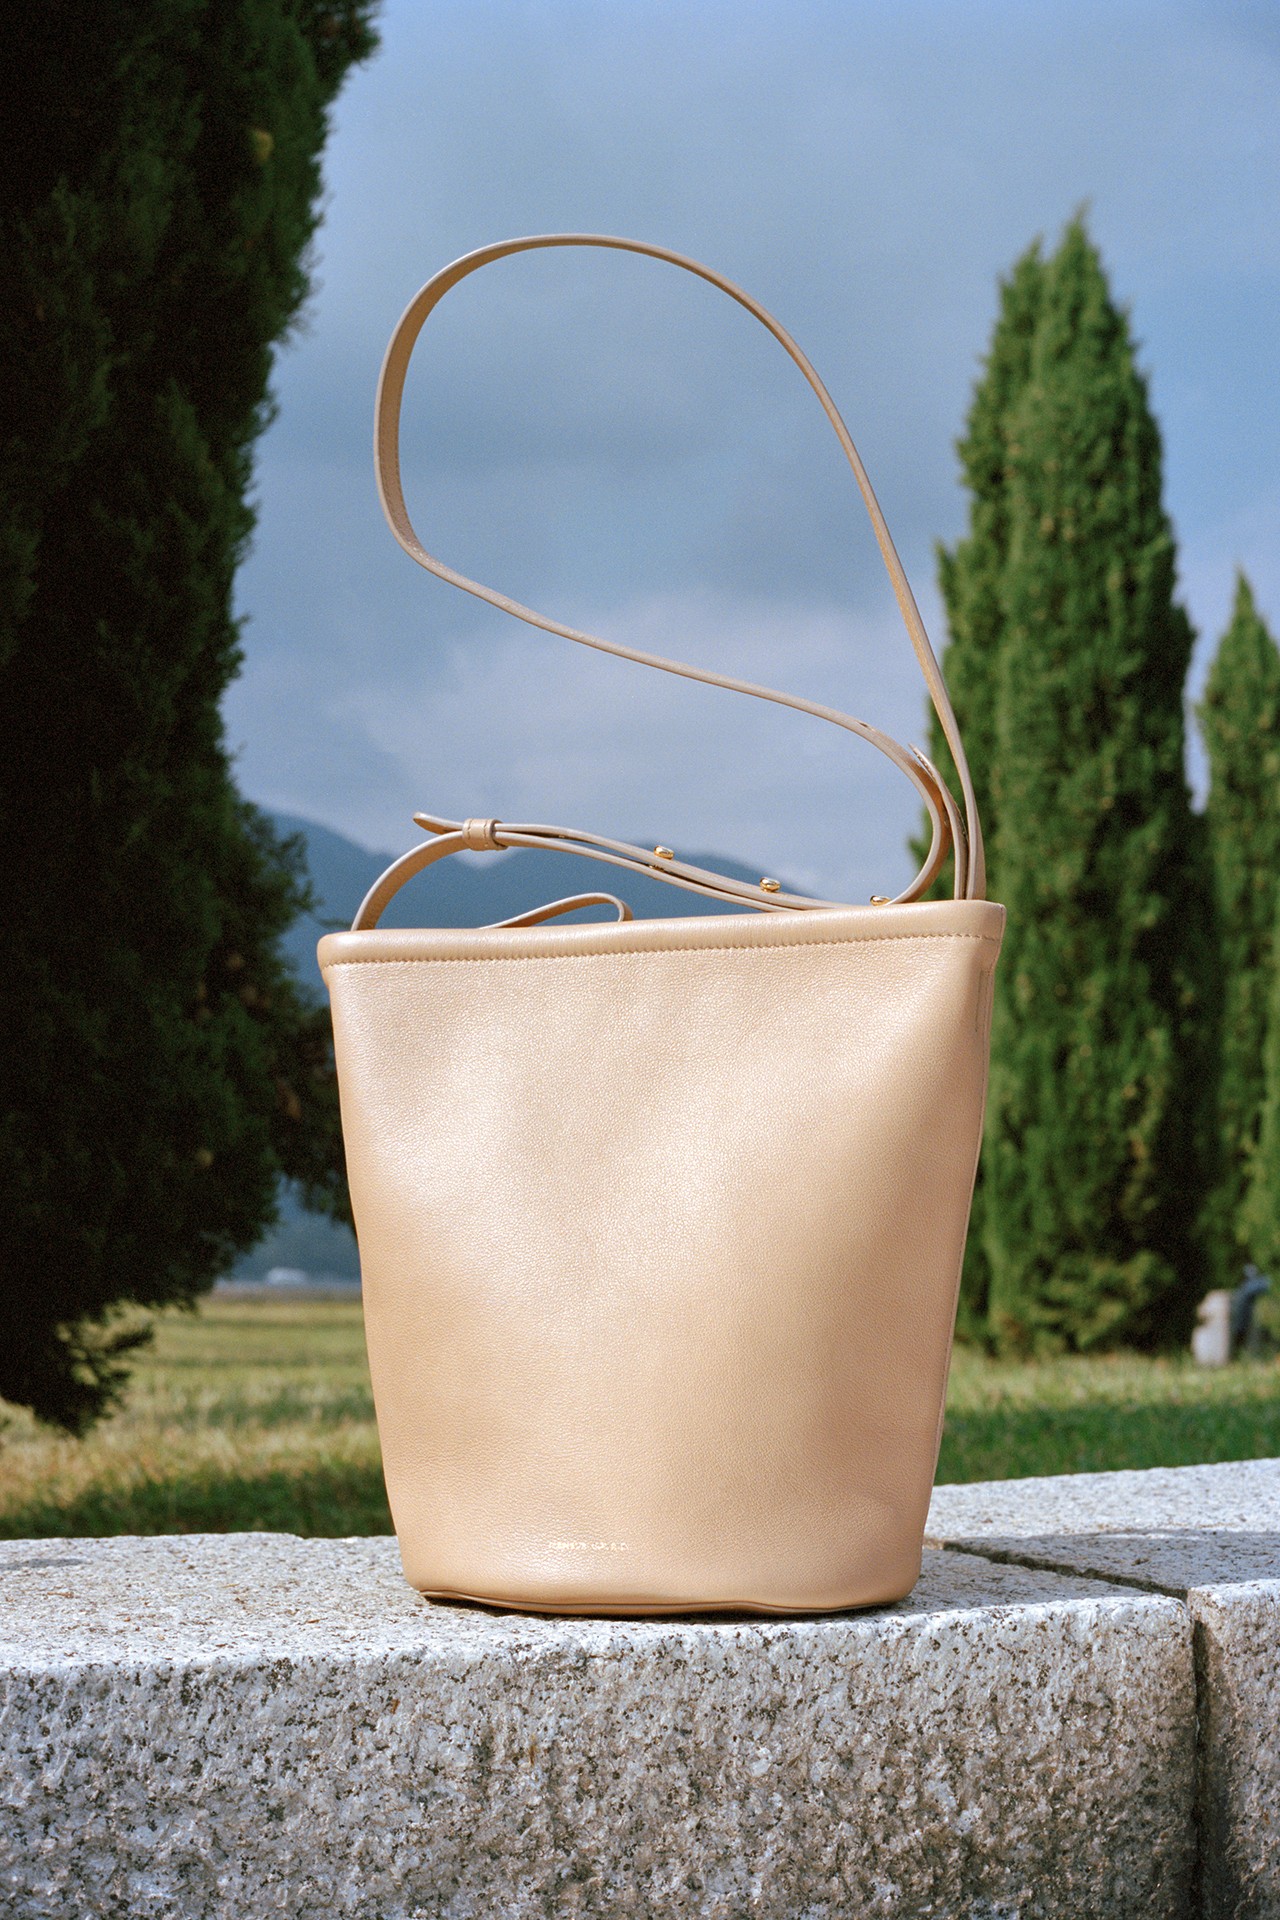 Mansur Gavriel представил новую модель сумки-ведра (фото 1)